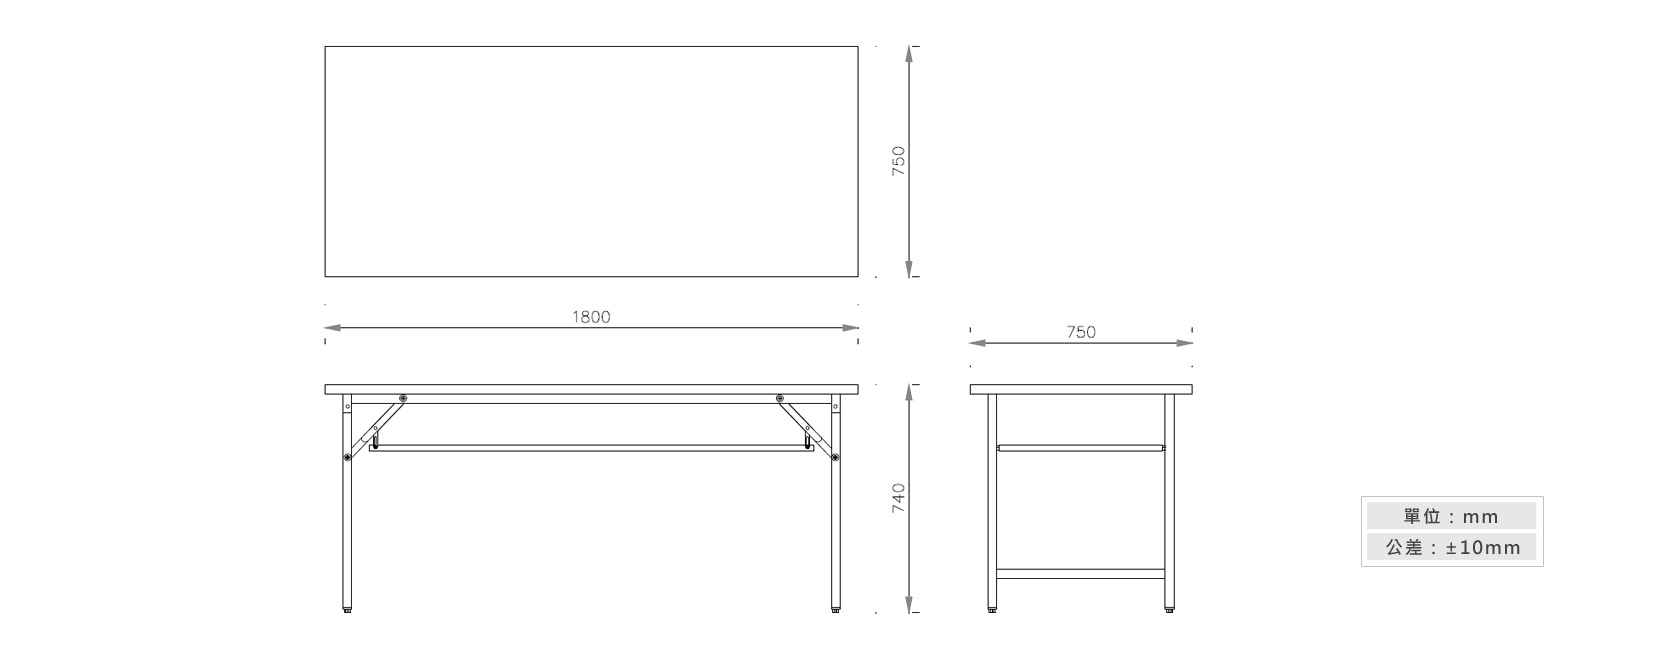 1-26 折合式會議桌(夾板桌面)材質說明